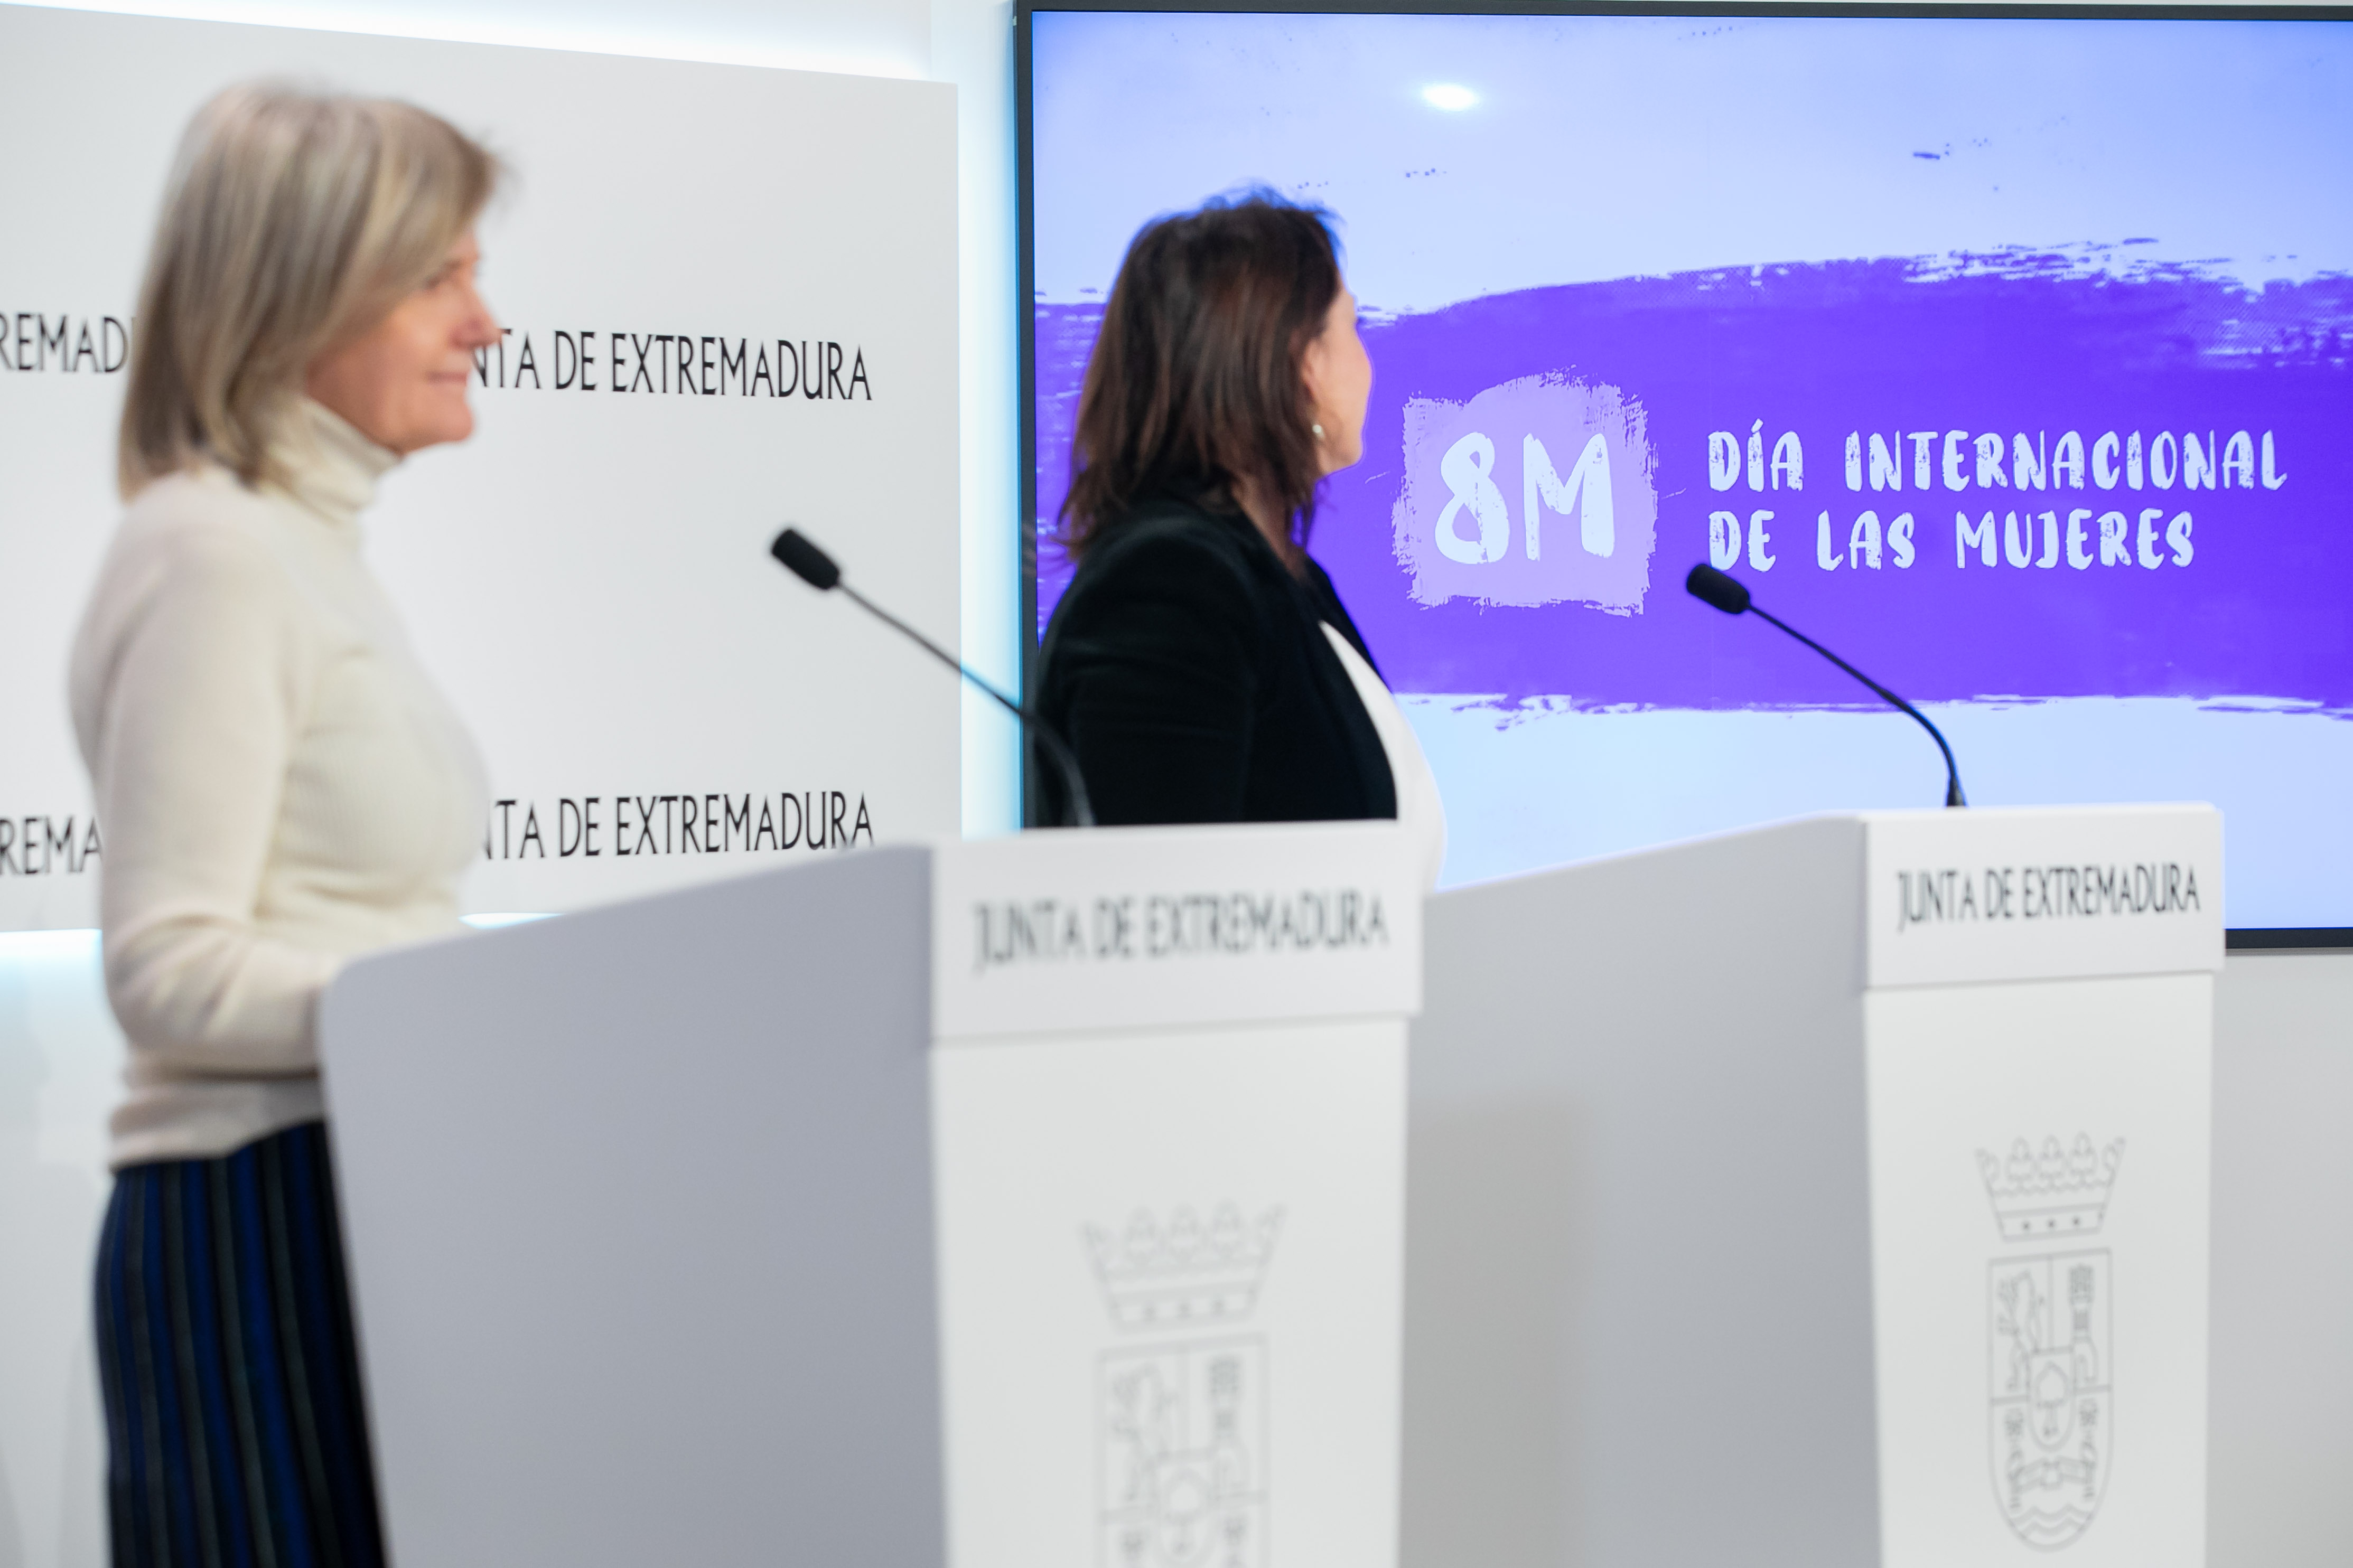 La portavoz de la Junta de Extremadura, Victoria Bazaga; y la secretaria general de Igualdad y Conciliación, Ara Sánchez, durante la rueda de prensa en la que se ha presentado la campaña.